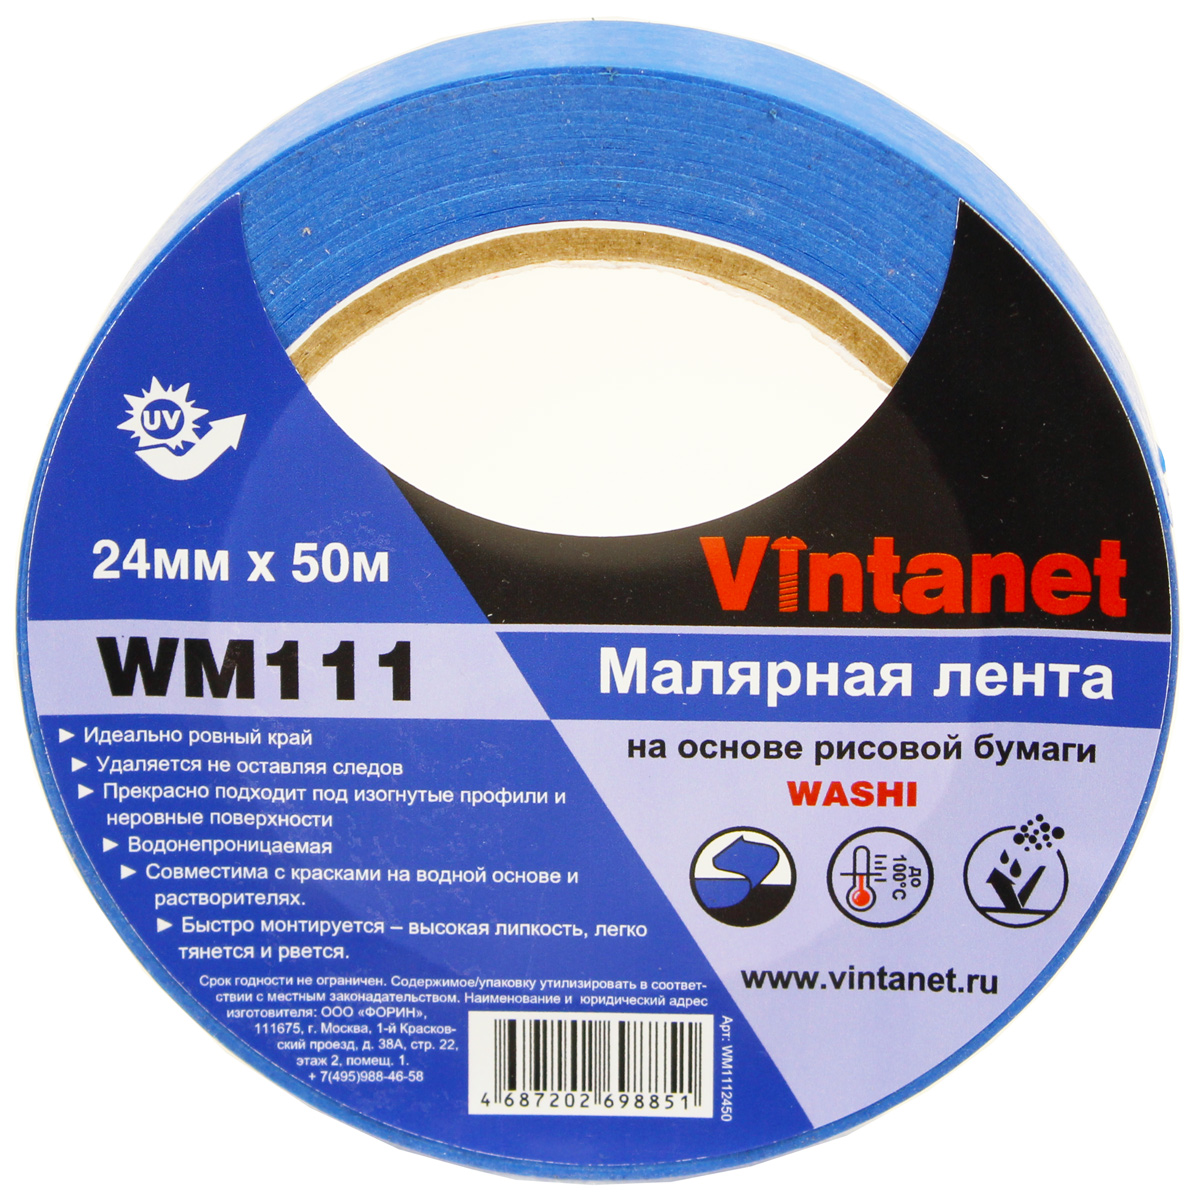 Лента малярная на основе рисовой бумаги Washi, Vintanet WM111, 24мм х 50м, WM1112450 декор на клеевой основе